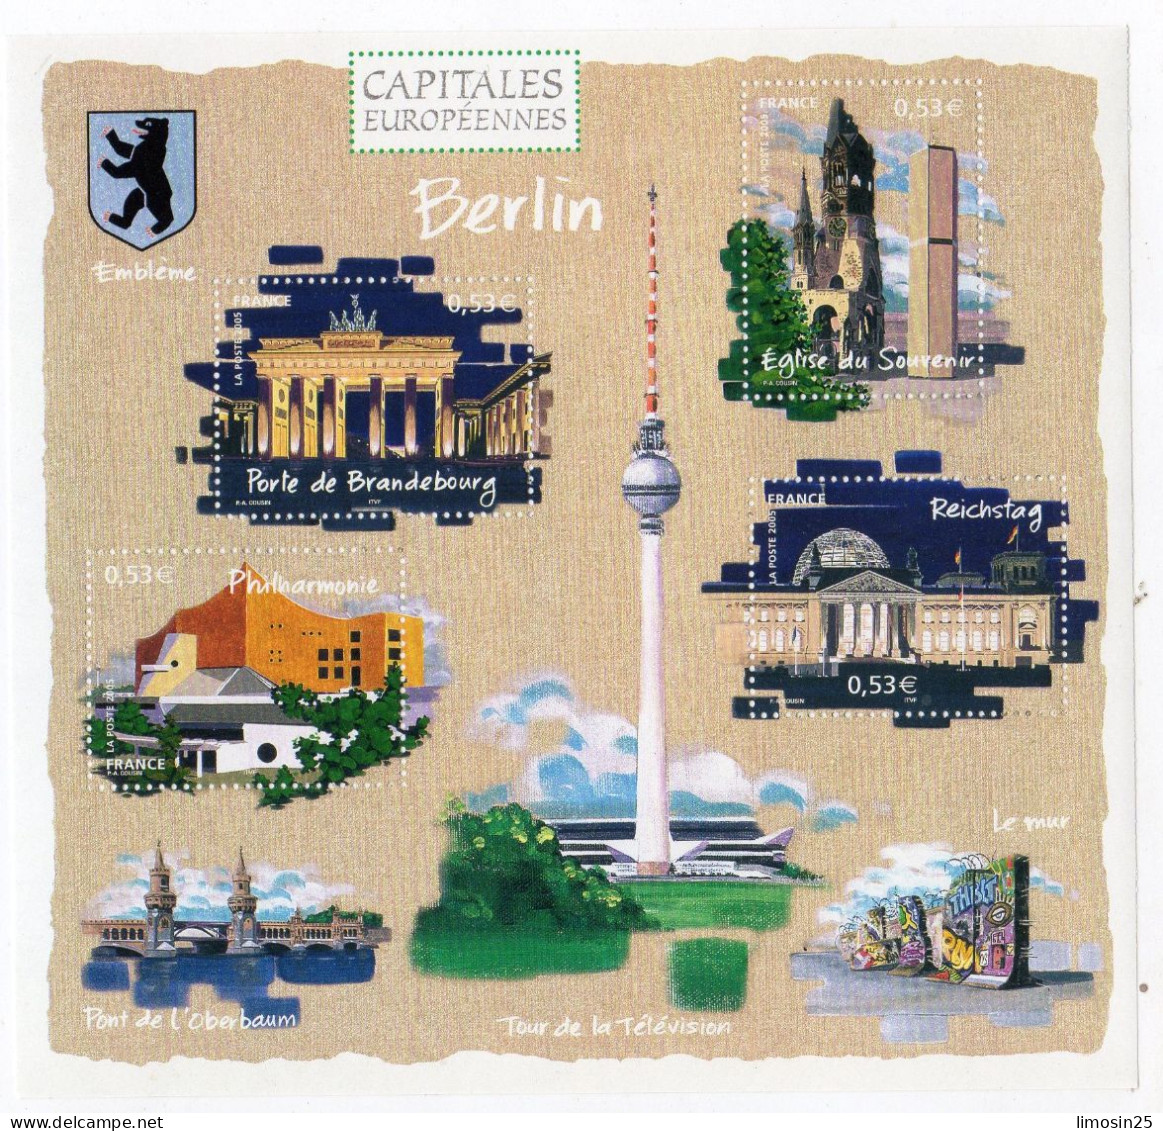 CAPITALES EUROPEENNES - Berlin - 2005 - Neufs